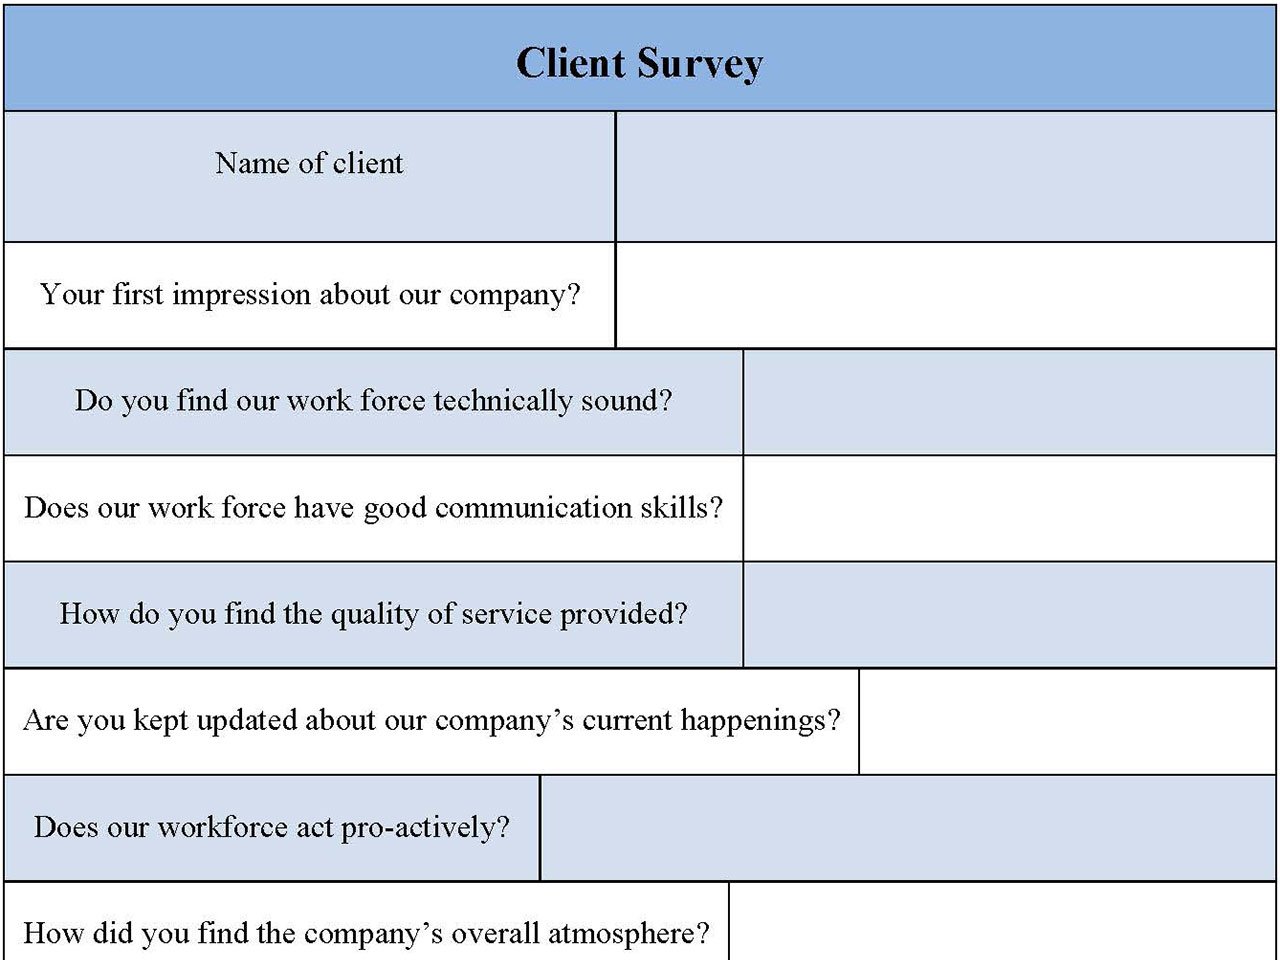 Client Survey Form